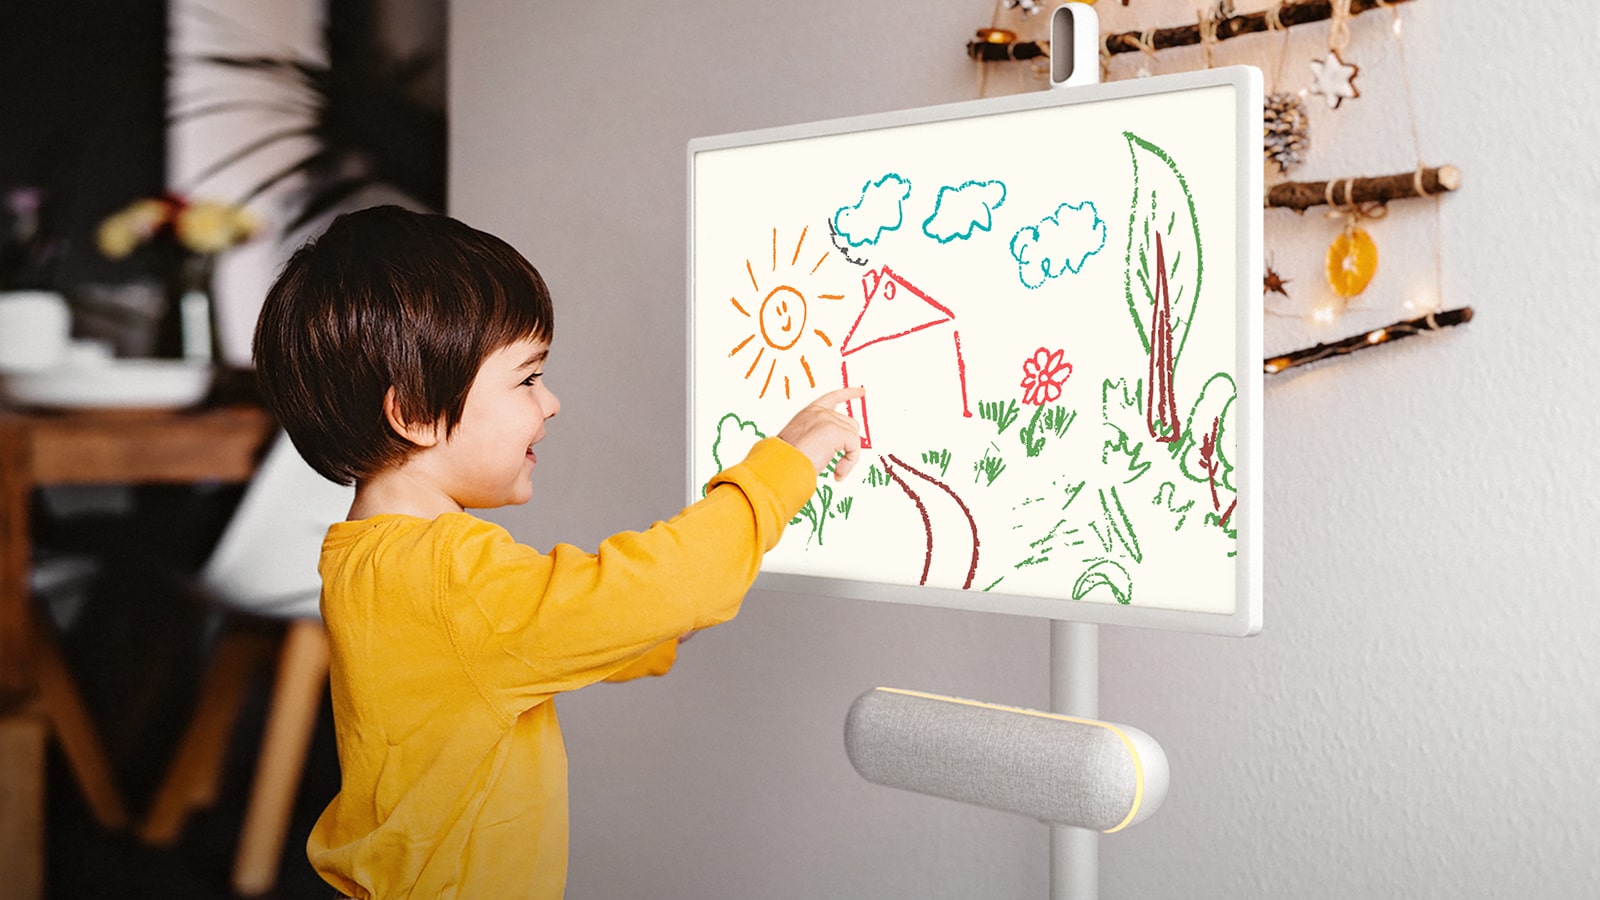 يتم وضع جهاز LG StanbyME في المطبخ مع السماعة XT7S المرفقة. طفل يرسم على الشاشة، ووضعية الإضاءة الصفراء للسماعة مفعّلة.